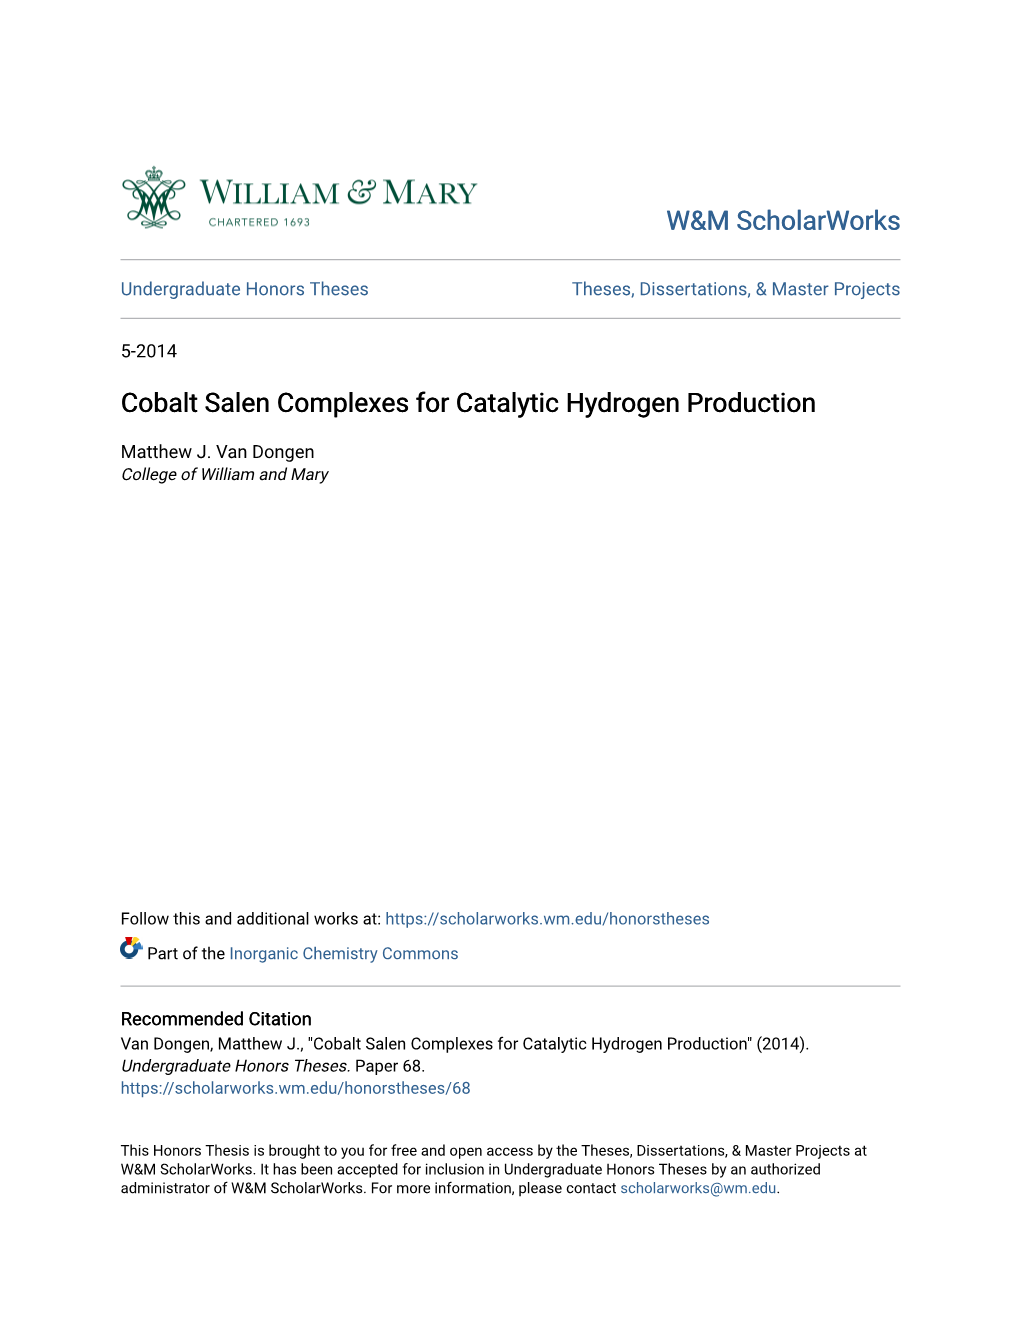 Cobalt Salen Complexes for Catalytic Hydrogen Production